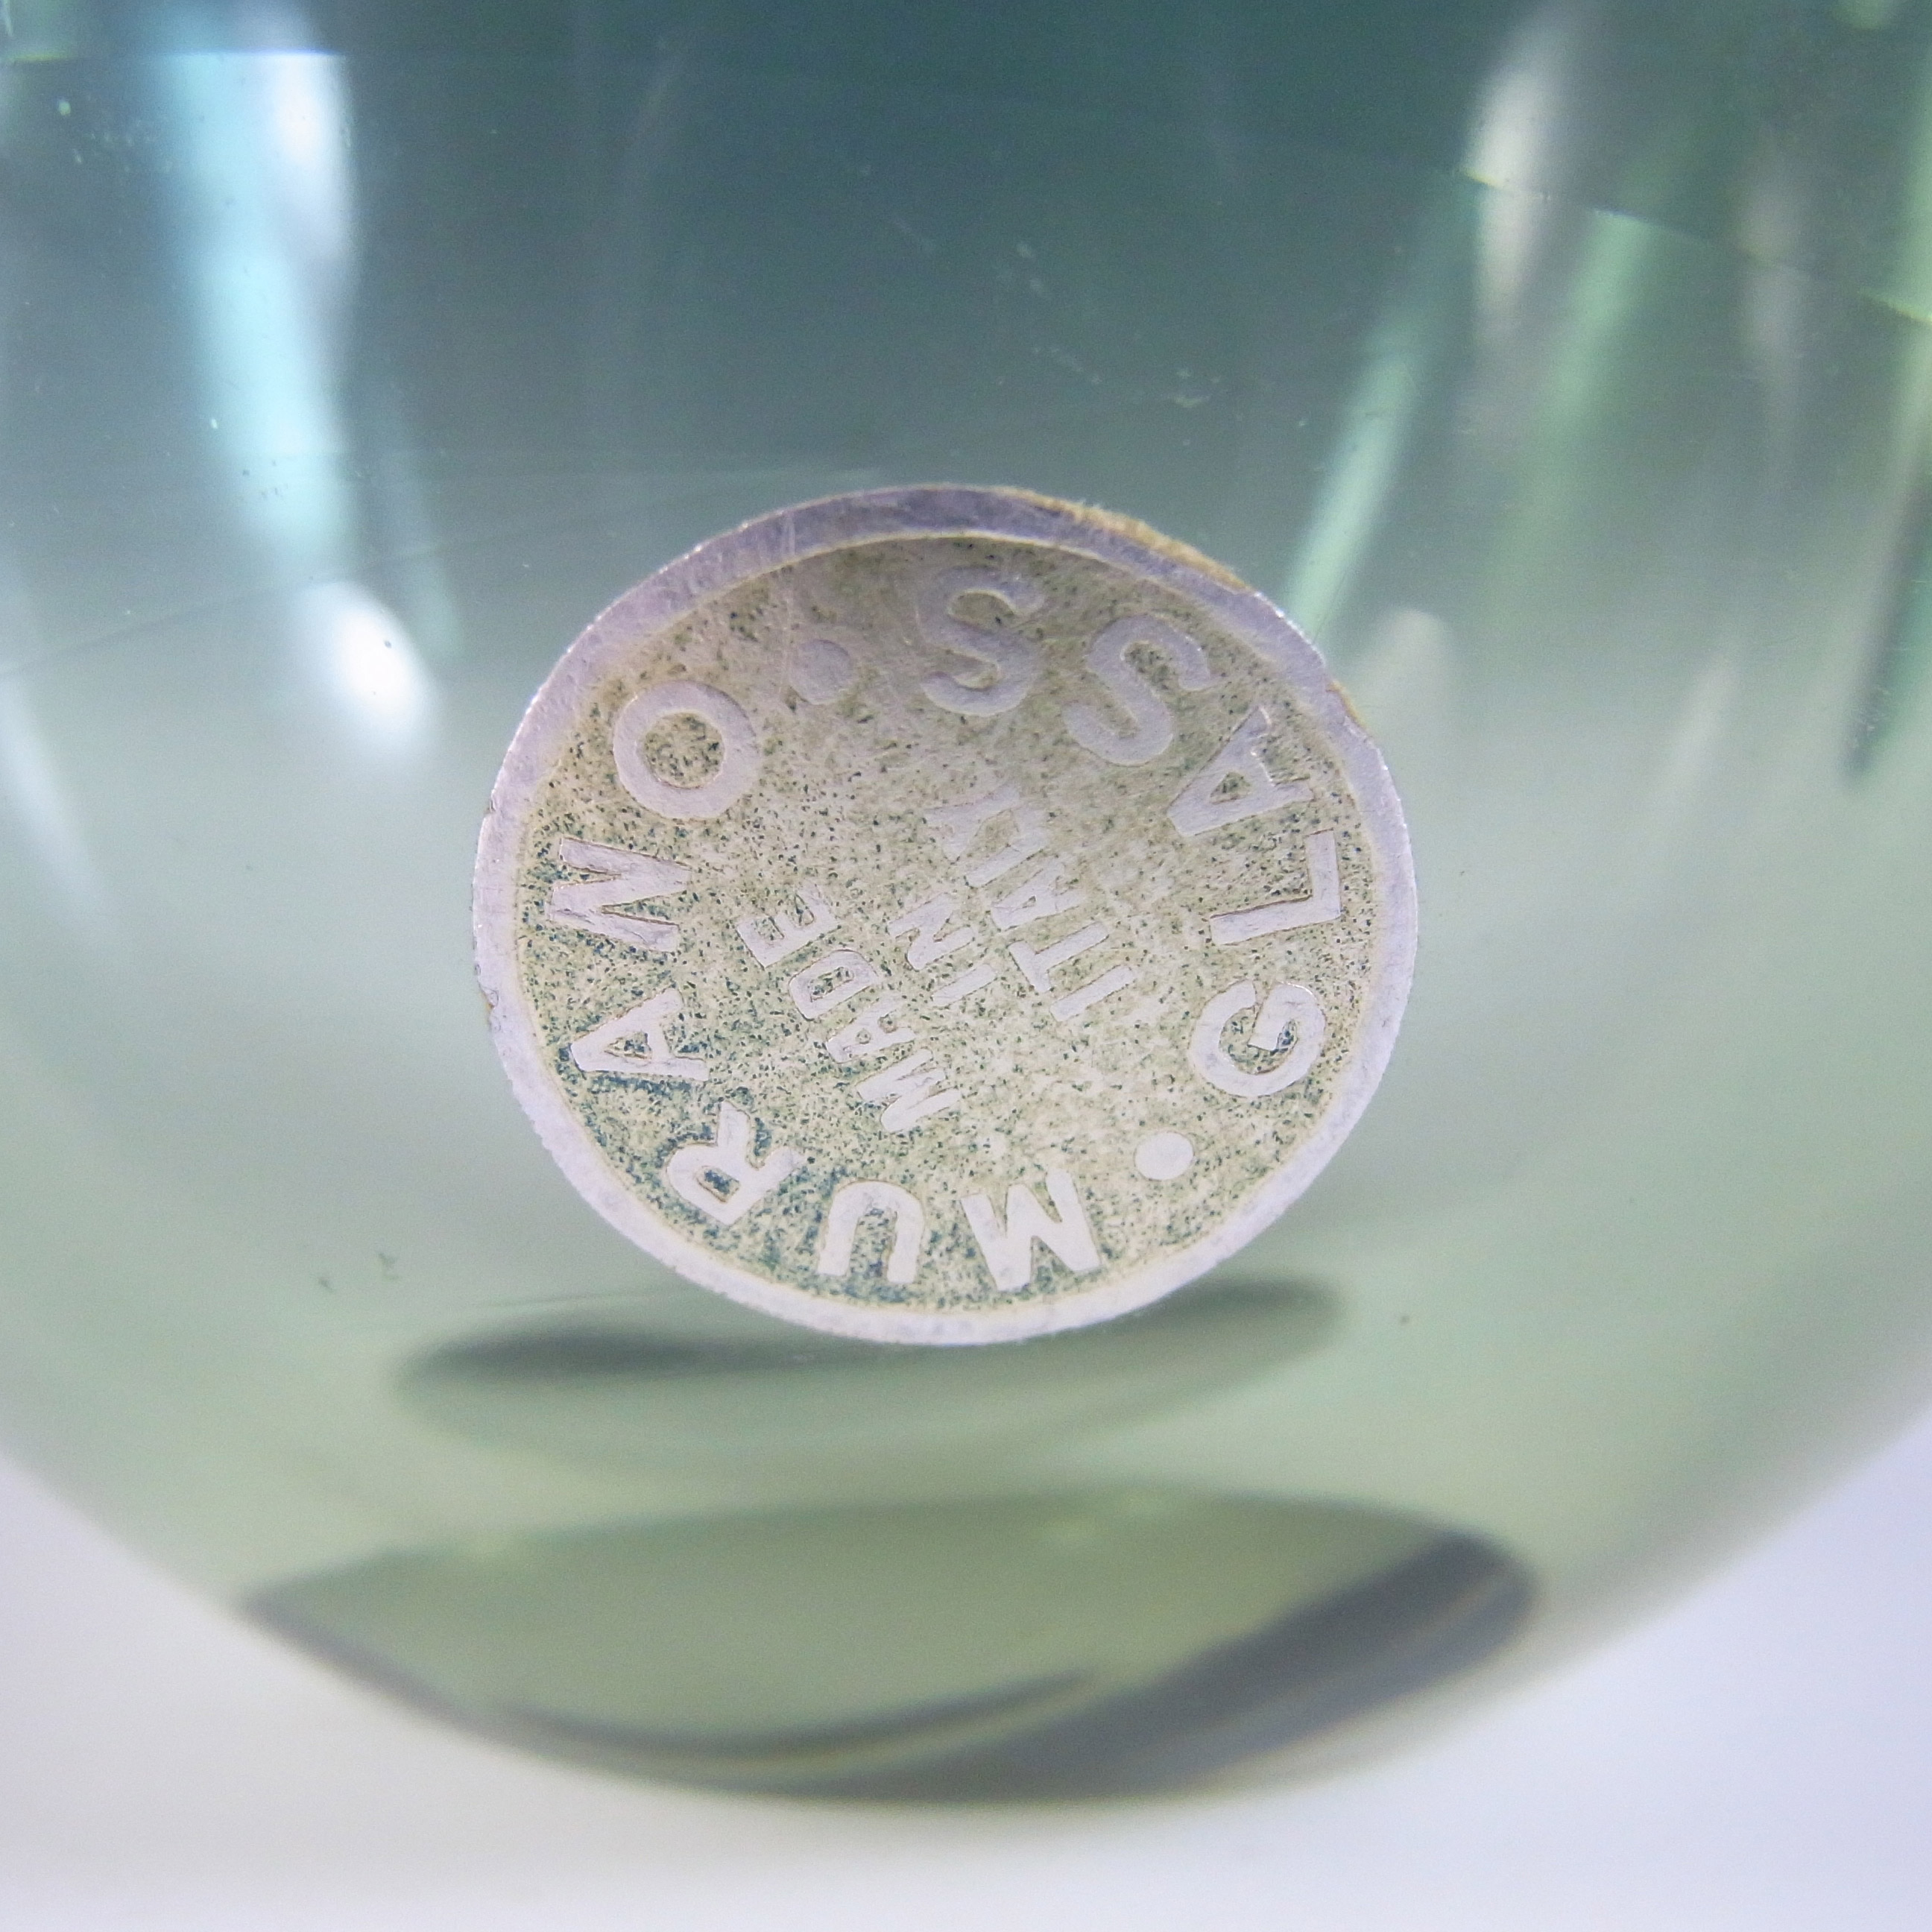 Seguso Dalla Venezia Murano Green Glass Clam Bowl/Vase - Click Image to Close